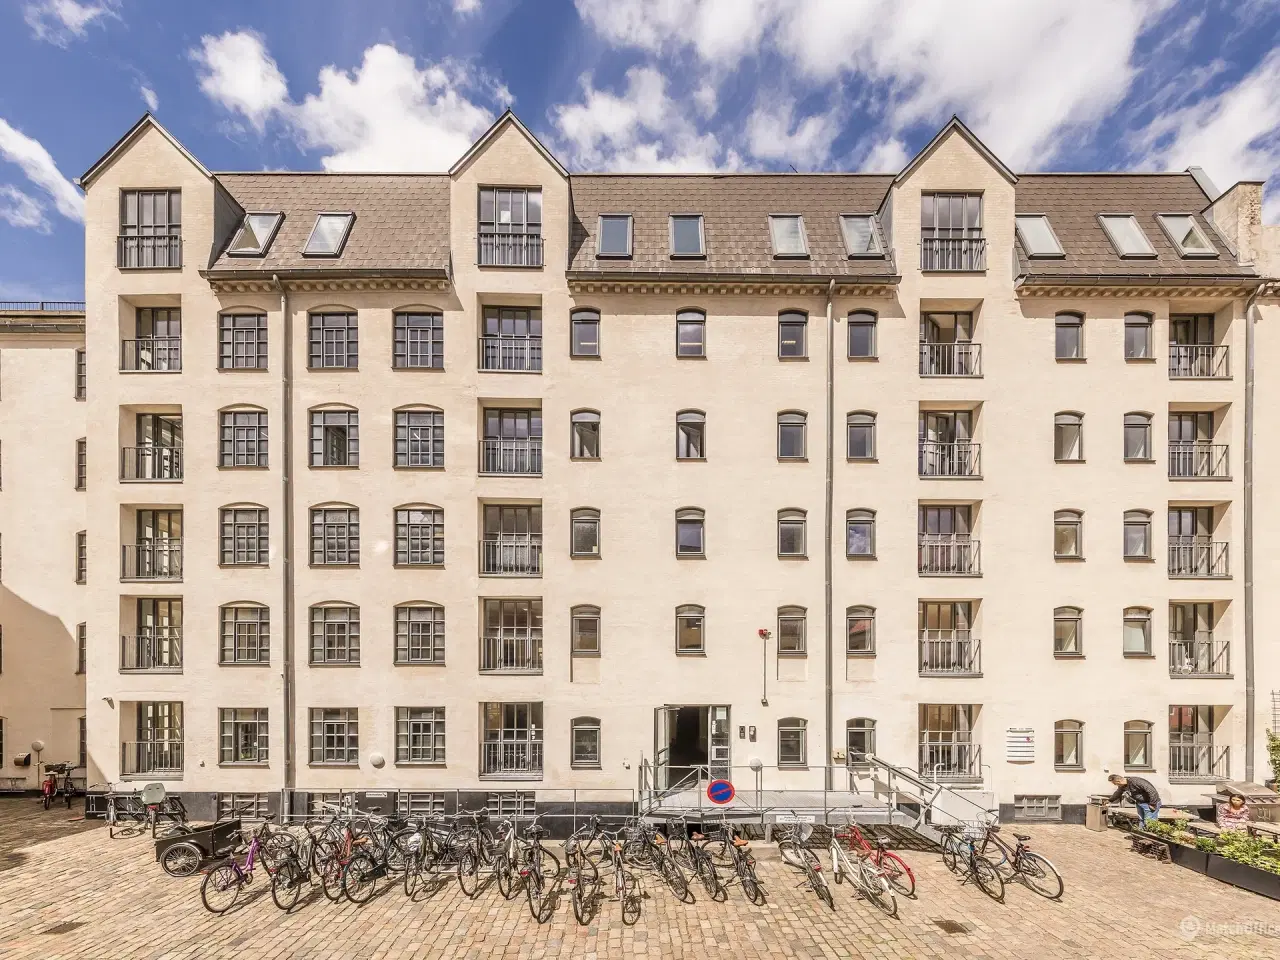 Billede 3 - Kontorer i historisk ejendom i Københavns hyggelige og livlige Latinerkvarter.